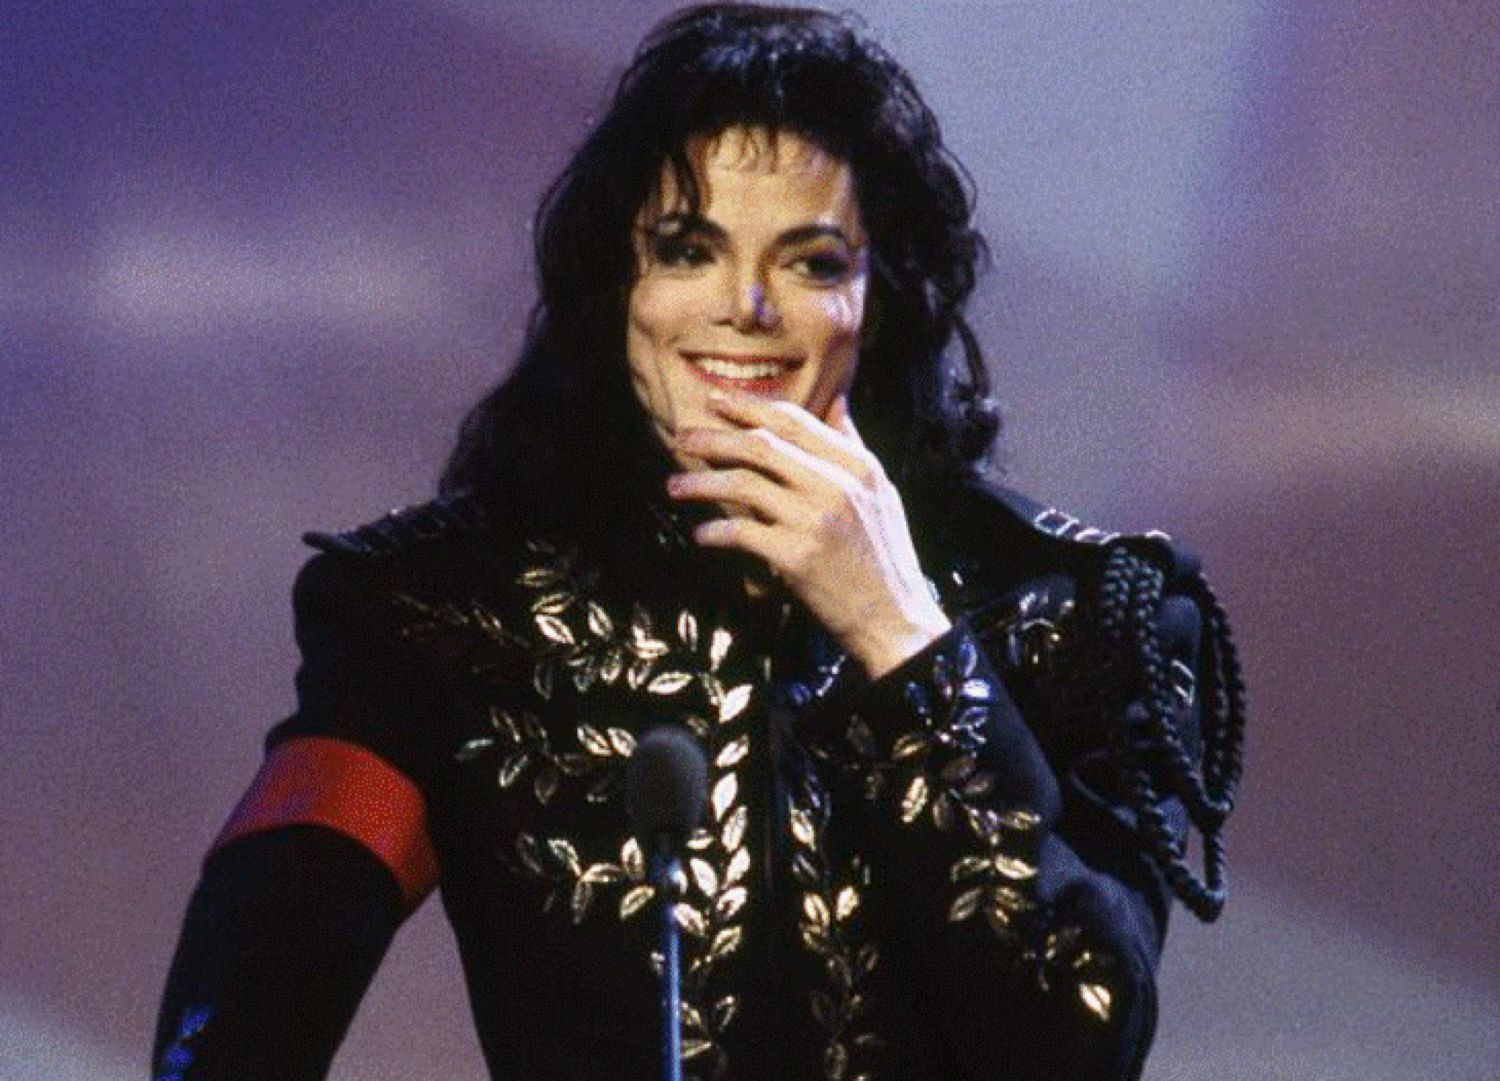 Michael Jackson îngropat sau incinerat în secret? Unde s-ar afla cenușa regelui muzicii pop